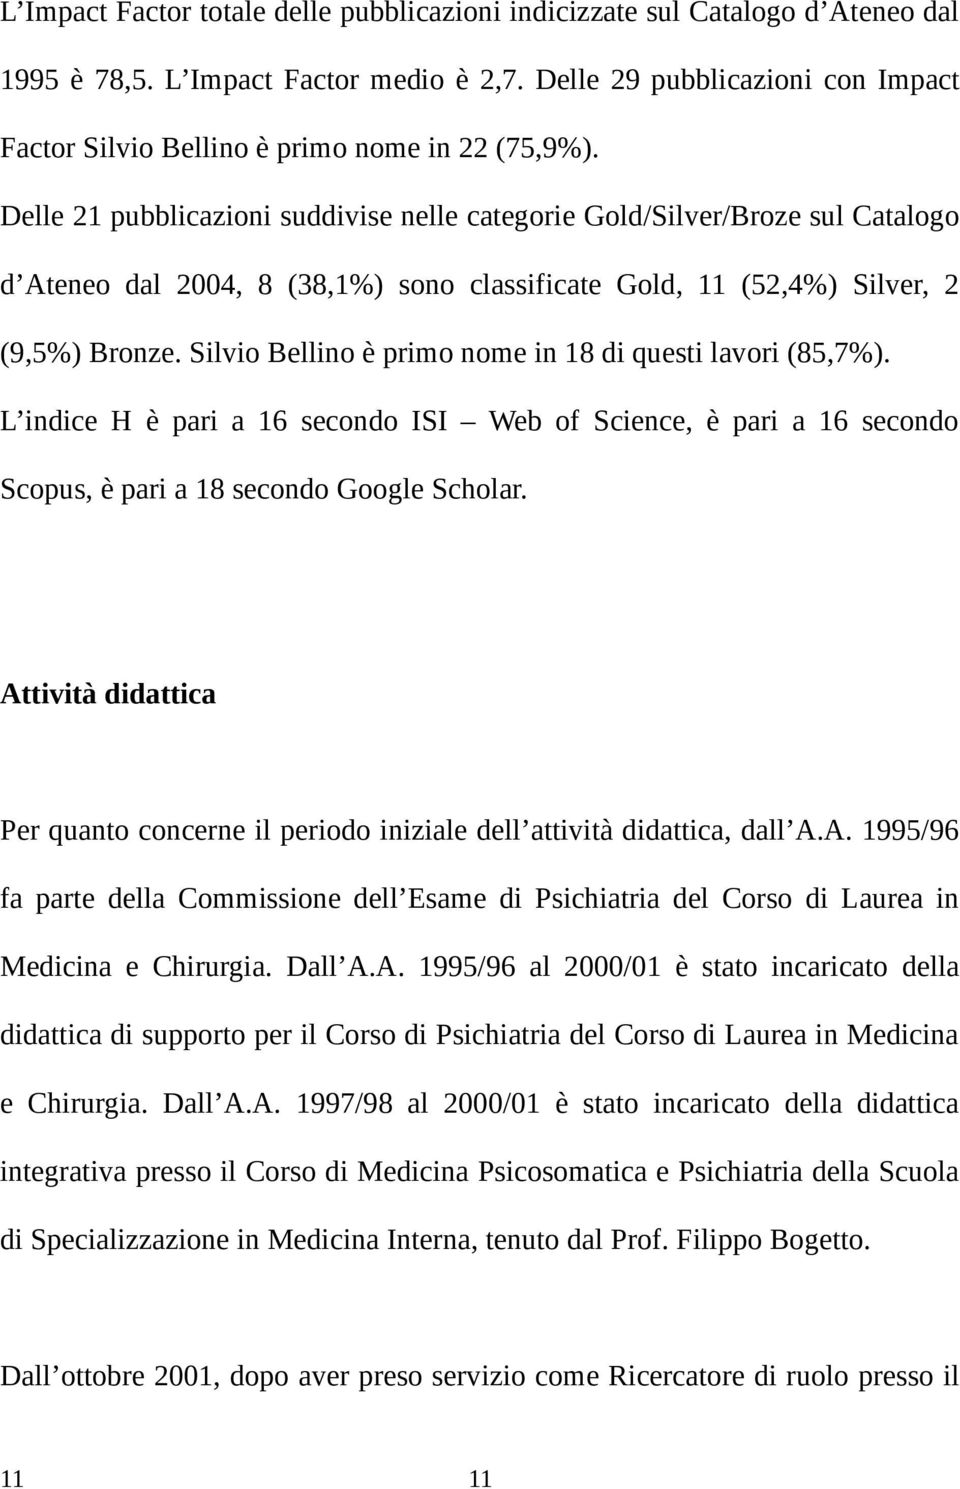 Delle 21 pubblicazioni suddivise nelle categorie Gold/Silver/Broze sul Catalogo d Ateneo dal 2004, 8 (38,1%) sono classificate Gold, 11 (52,4%) Silver, 2 (9,5%) Bronze.